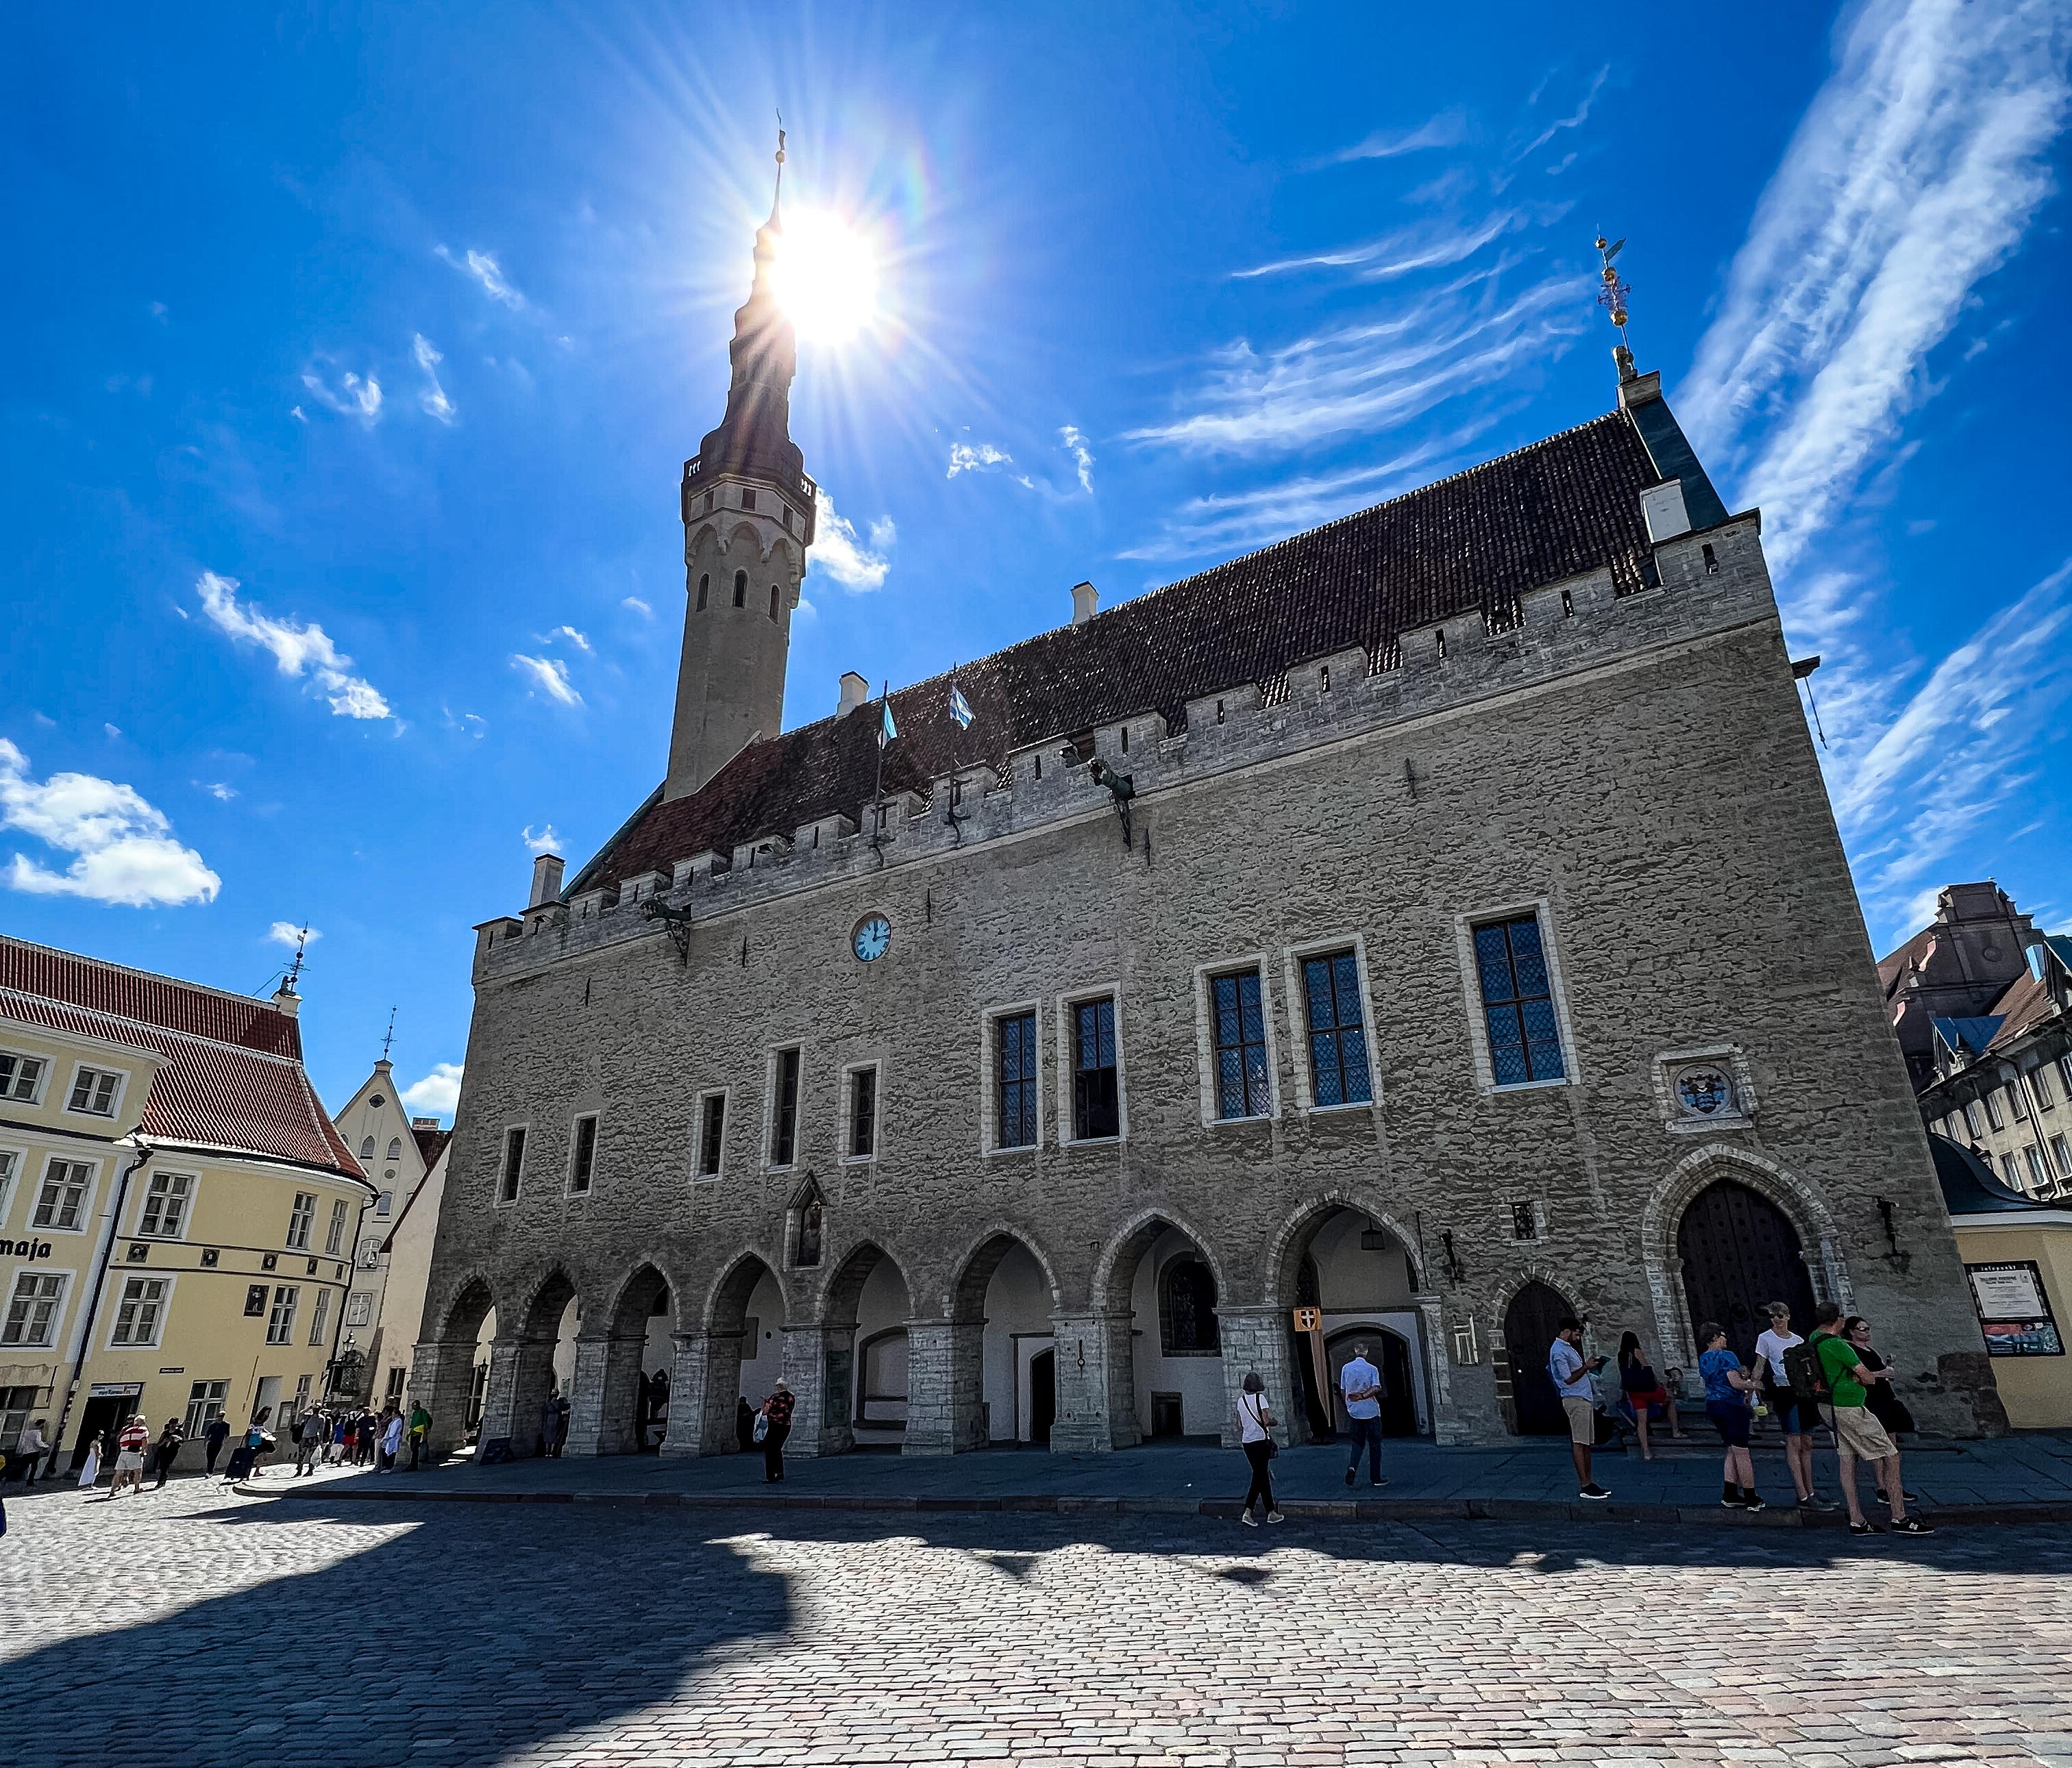 LISTA DE ATRATIVOS DE TALLINN Tallinn Town Hall